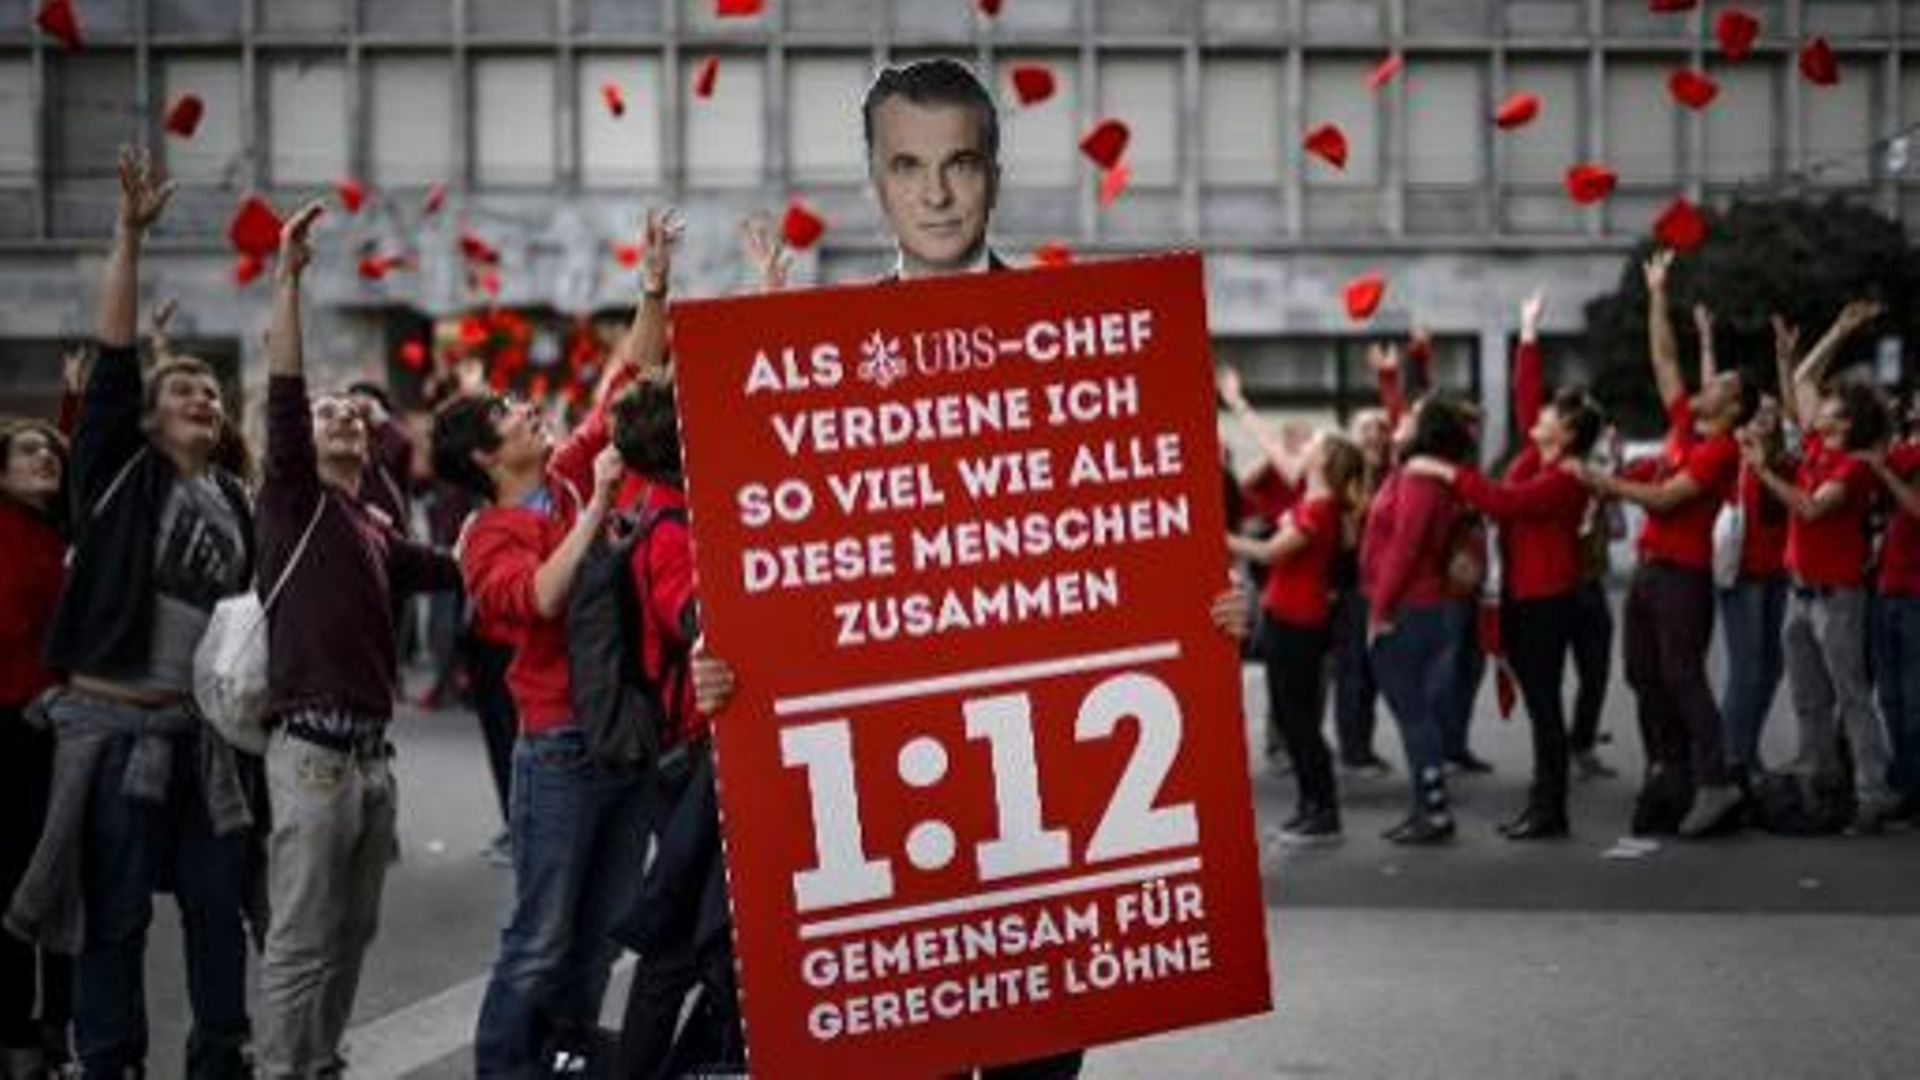 Une pancarte avec le visage du directeur général de la banque UBS, Sergi Ermotti, lors d'une manifestation des Jeunes socialistes pour la limitation des gros salaires en Suisse, le 2 novembre 2013 à Zurich